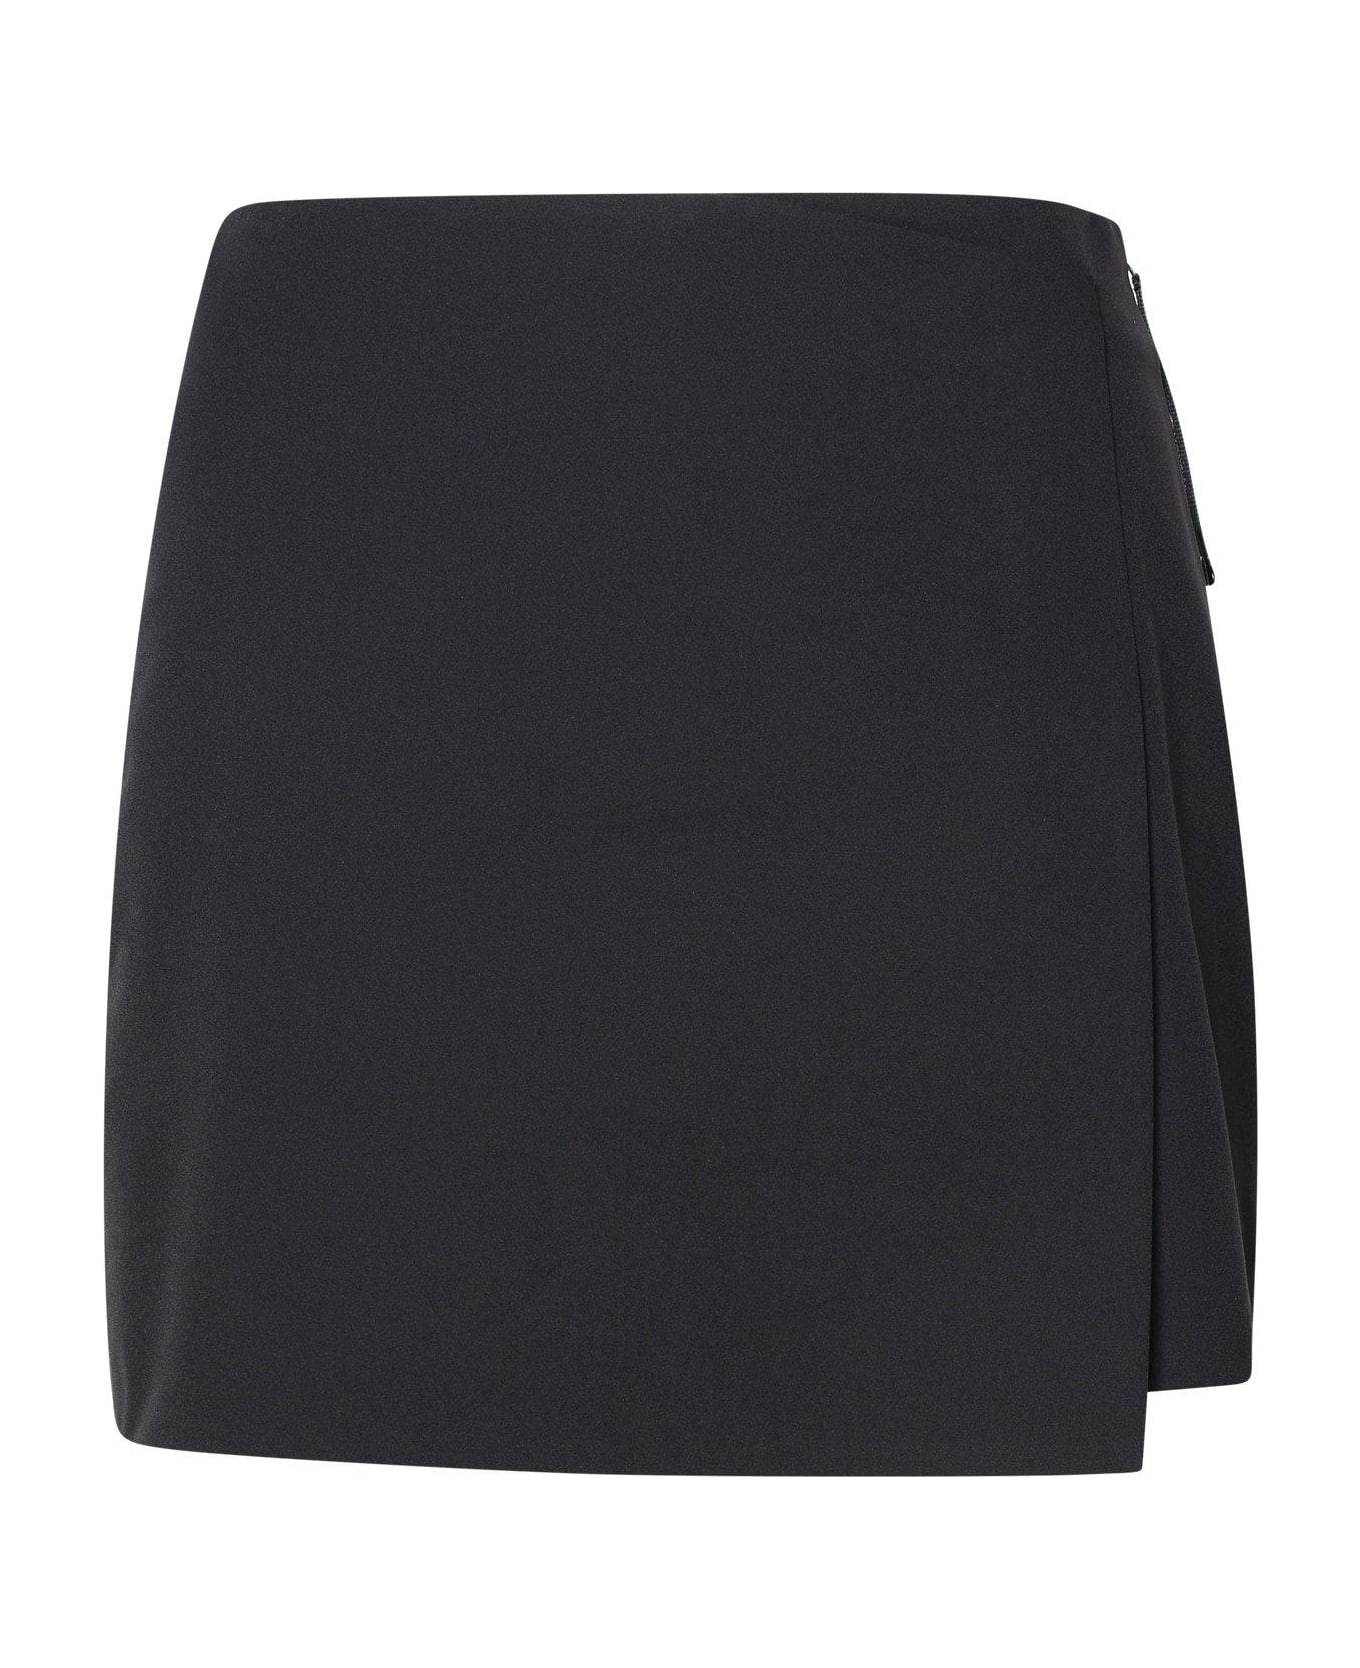 Moncler Skirt Design Shorts - Black ショートパンツ